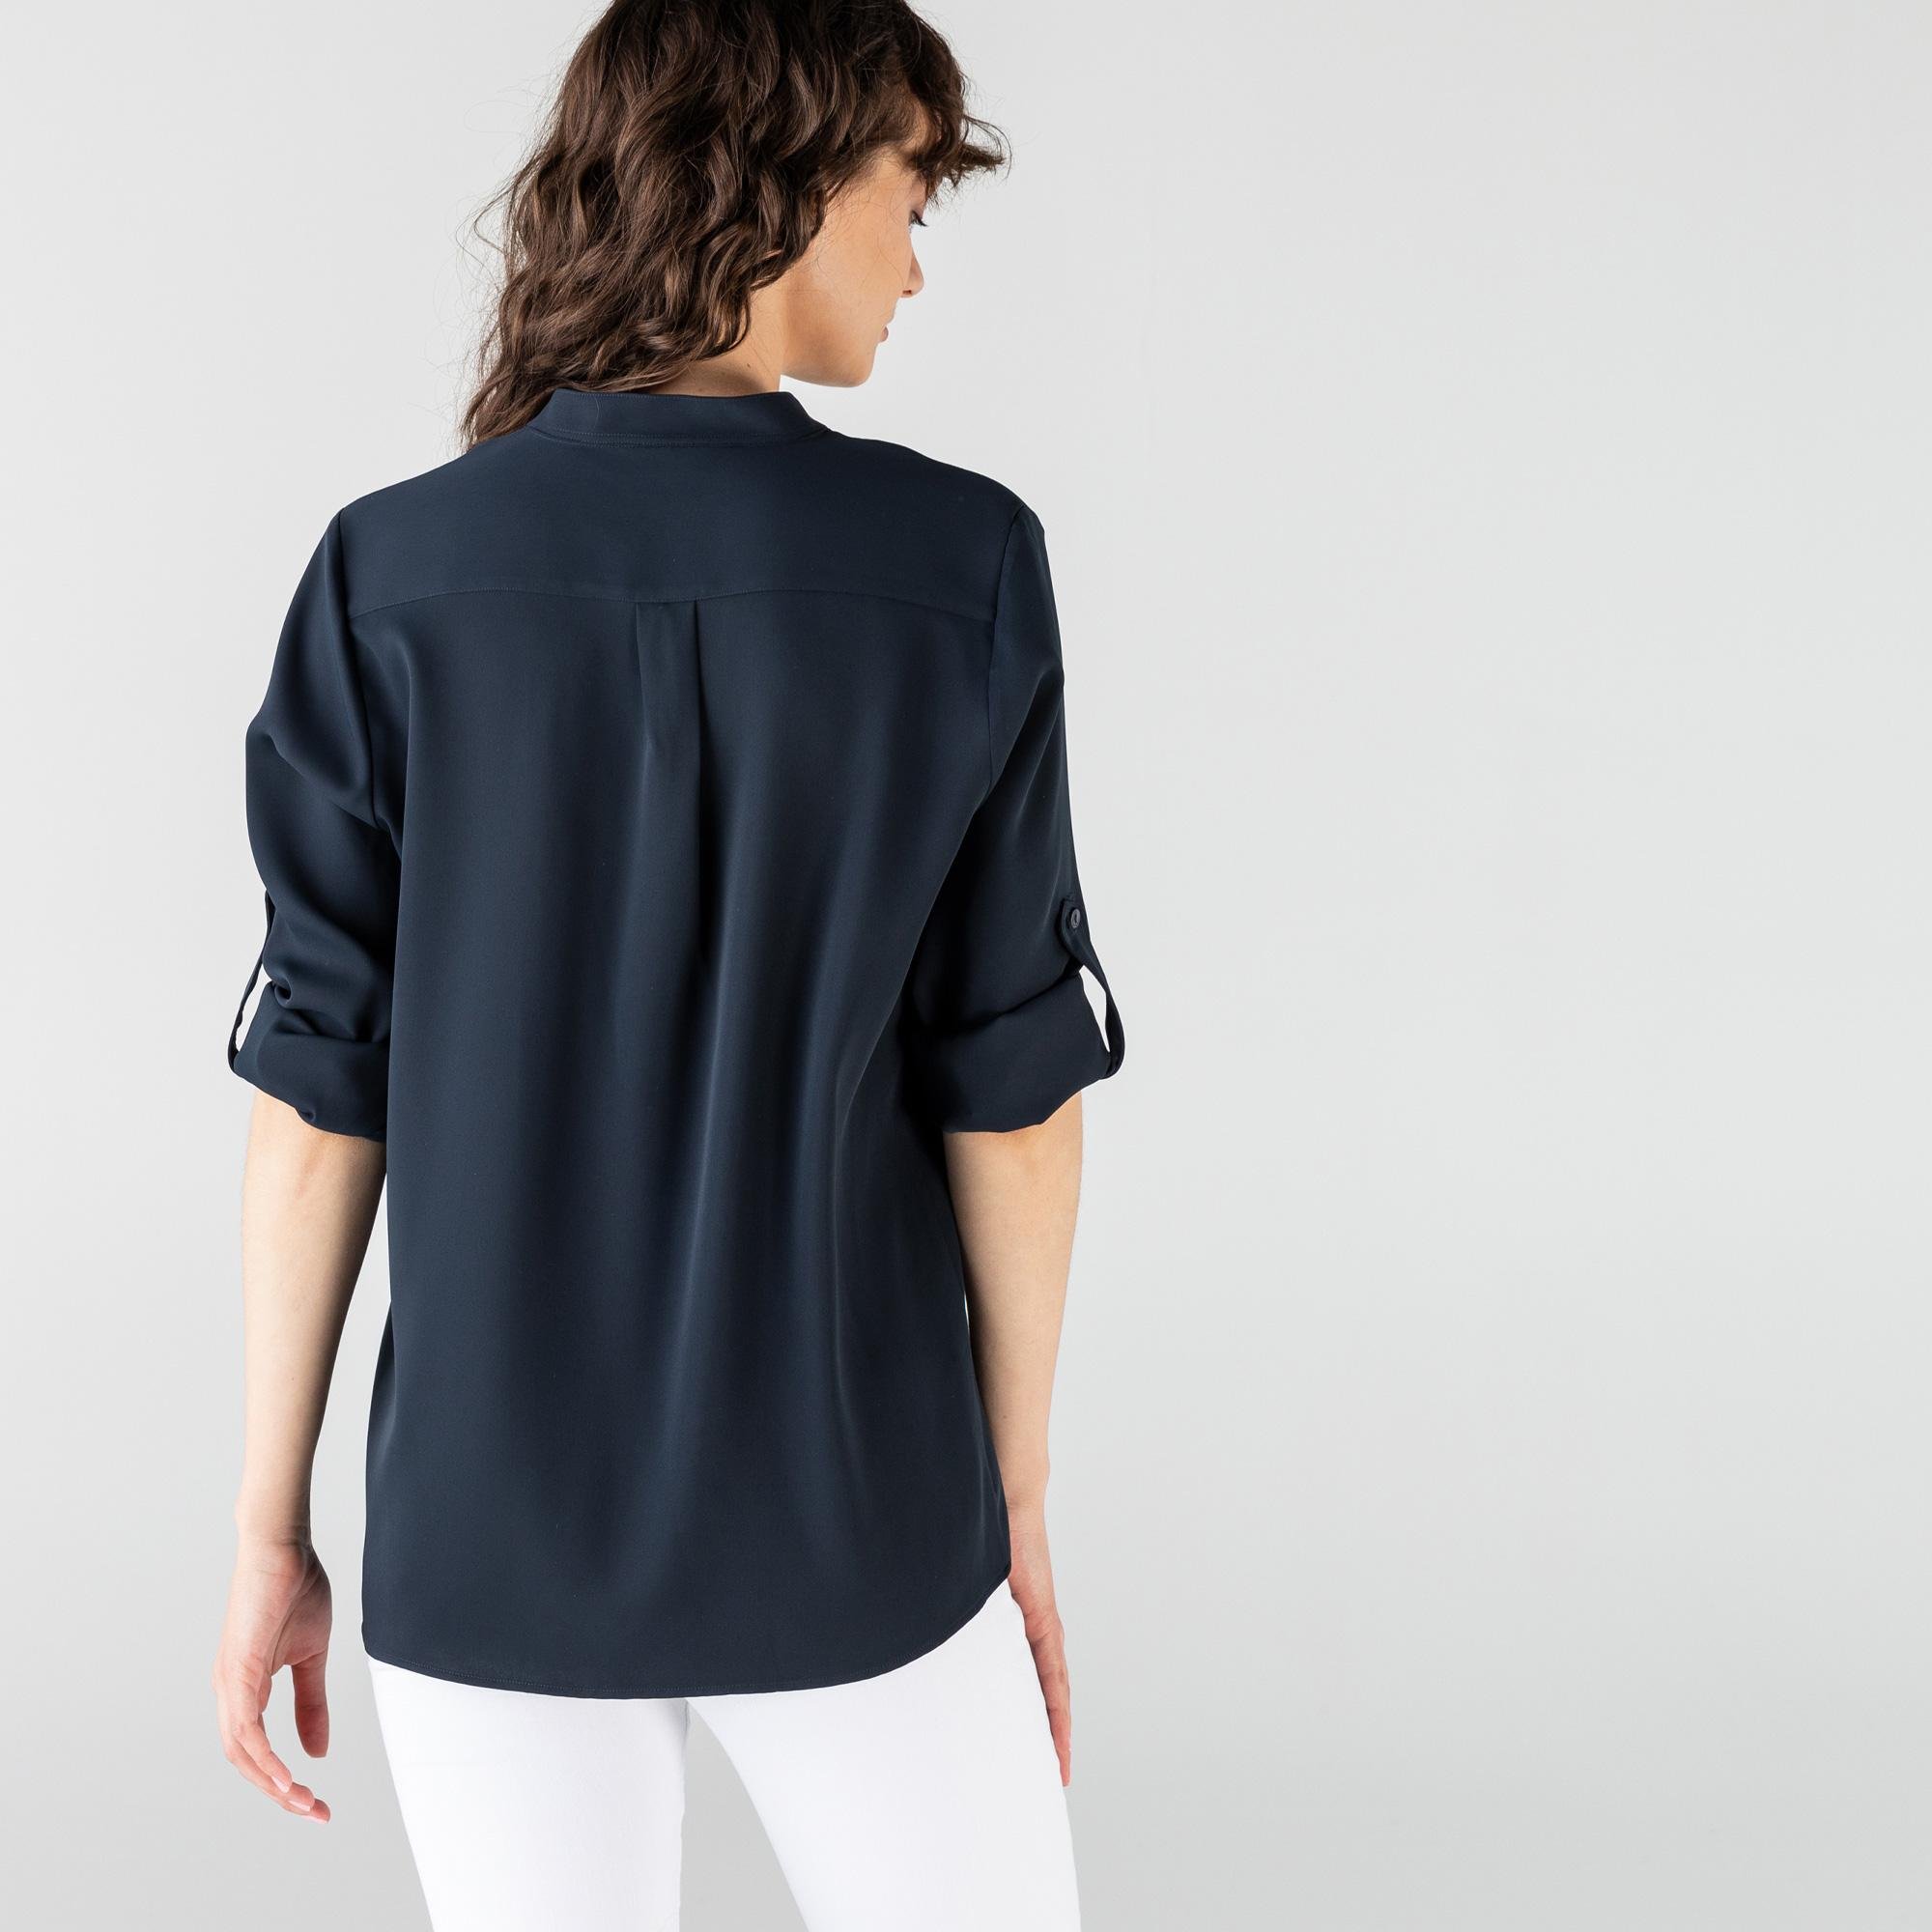 Lacoste  Ženy tkaná košile s dlouhým rukávem